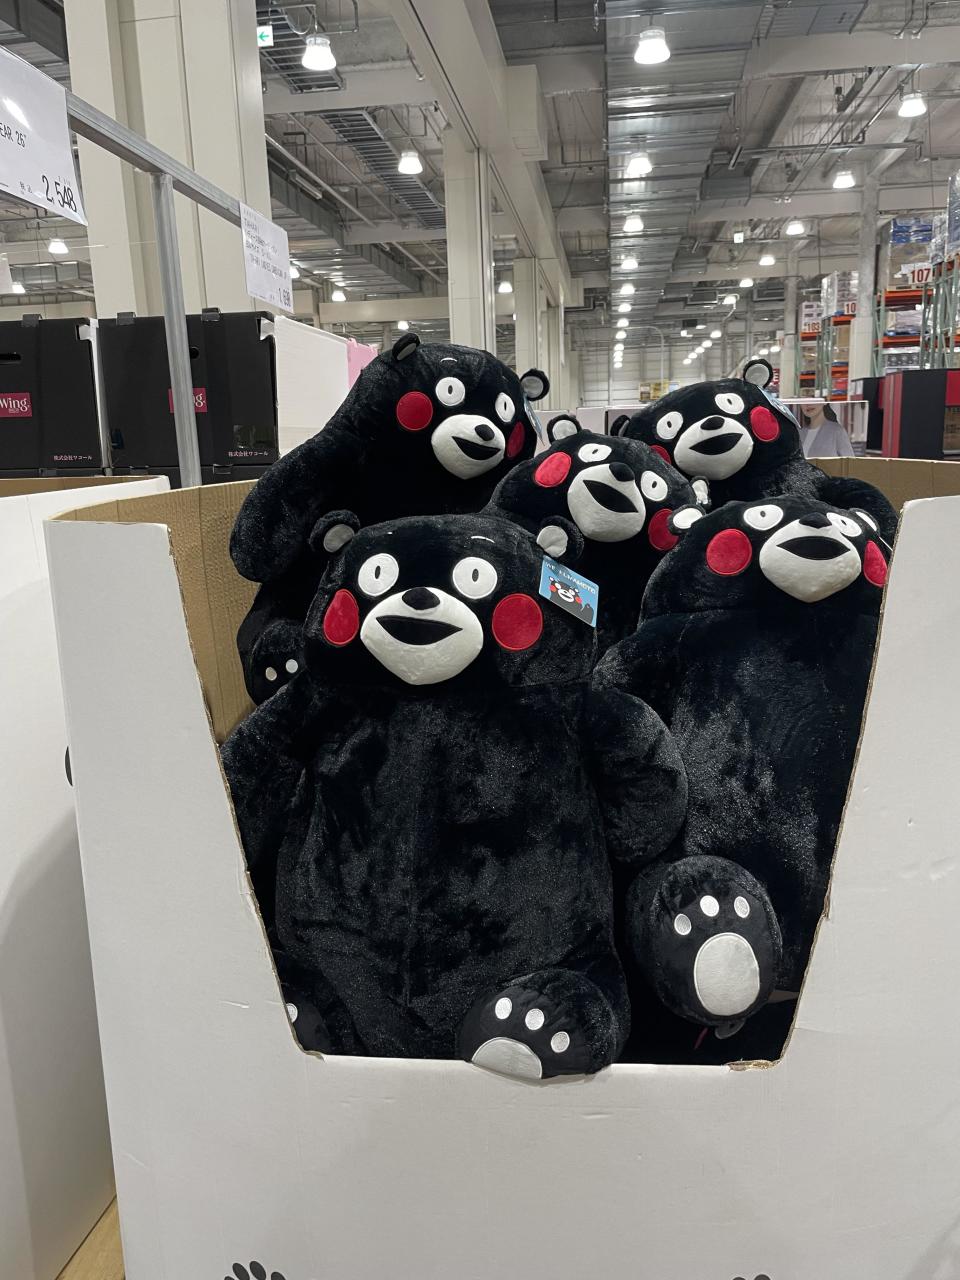 熊本熊採取「零授權費」策略，令商品暢銷全國。
（圖：kumamonjpfun@twitter）
